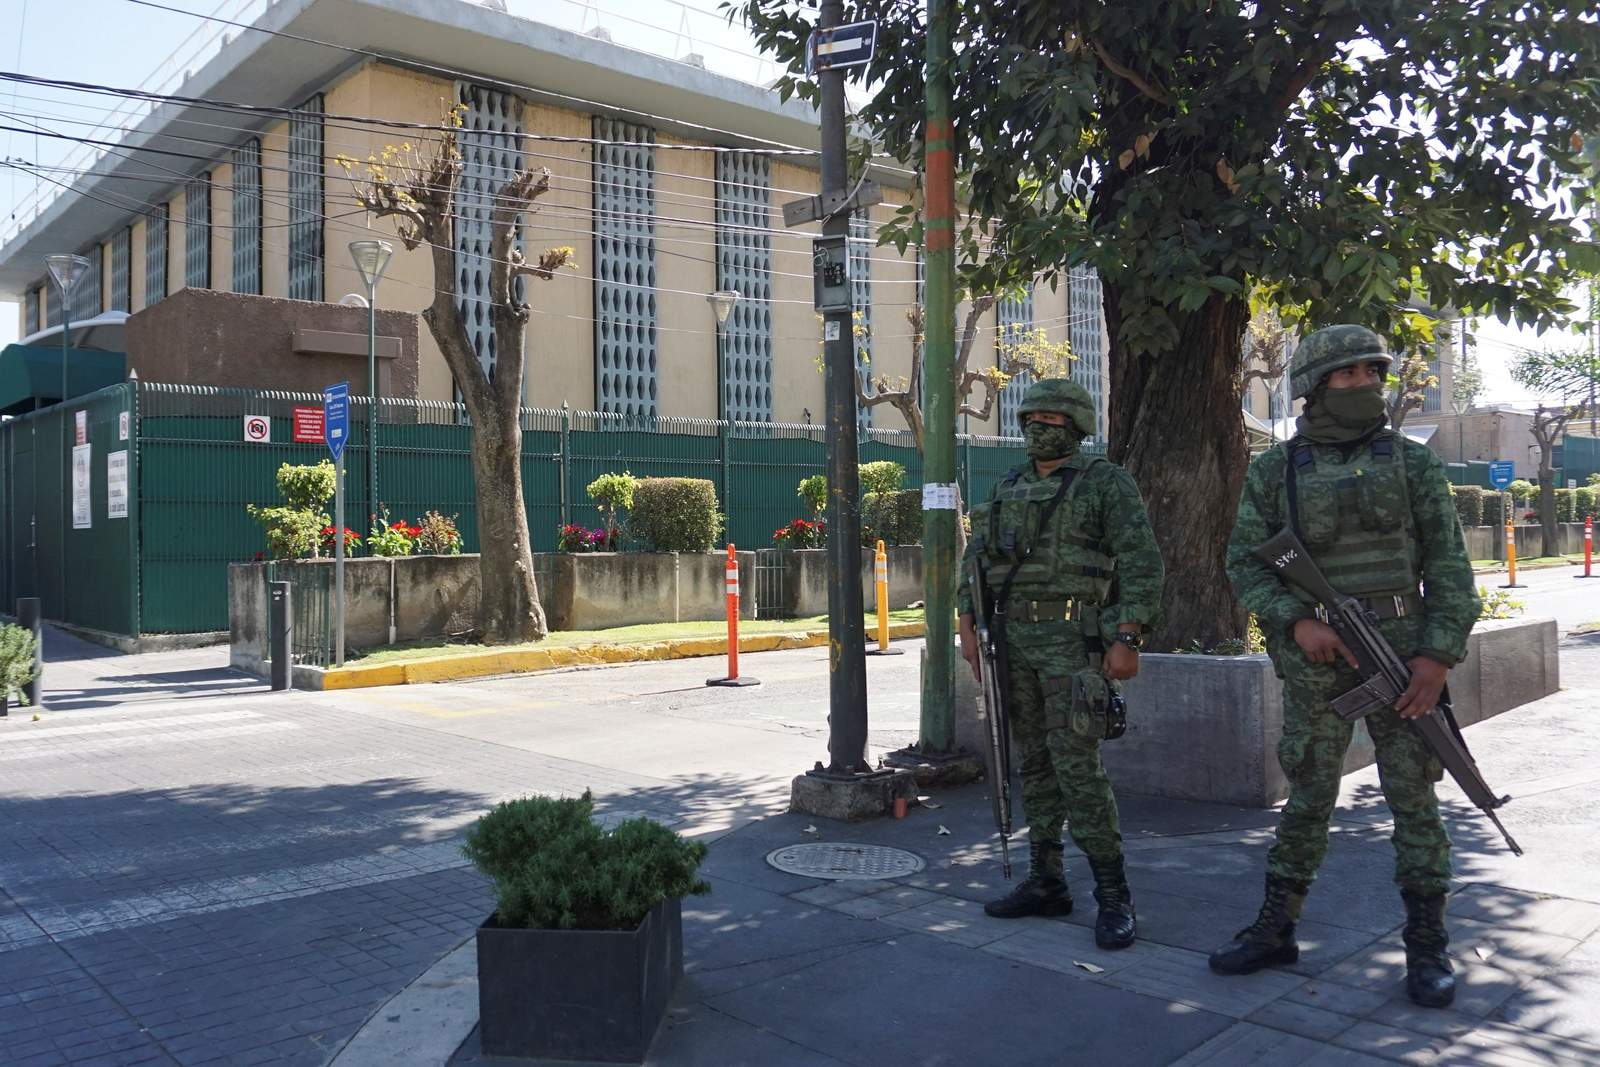  La prensa local en el occidente de México está reportando que un cártel de la droga colgó letreros donde niega estar involucrado en un ataque con granada ocurrido el 30 de noviembre contra el consulado de Estados Unidos en la ciudad de Guadalajara. (EFE)